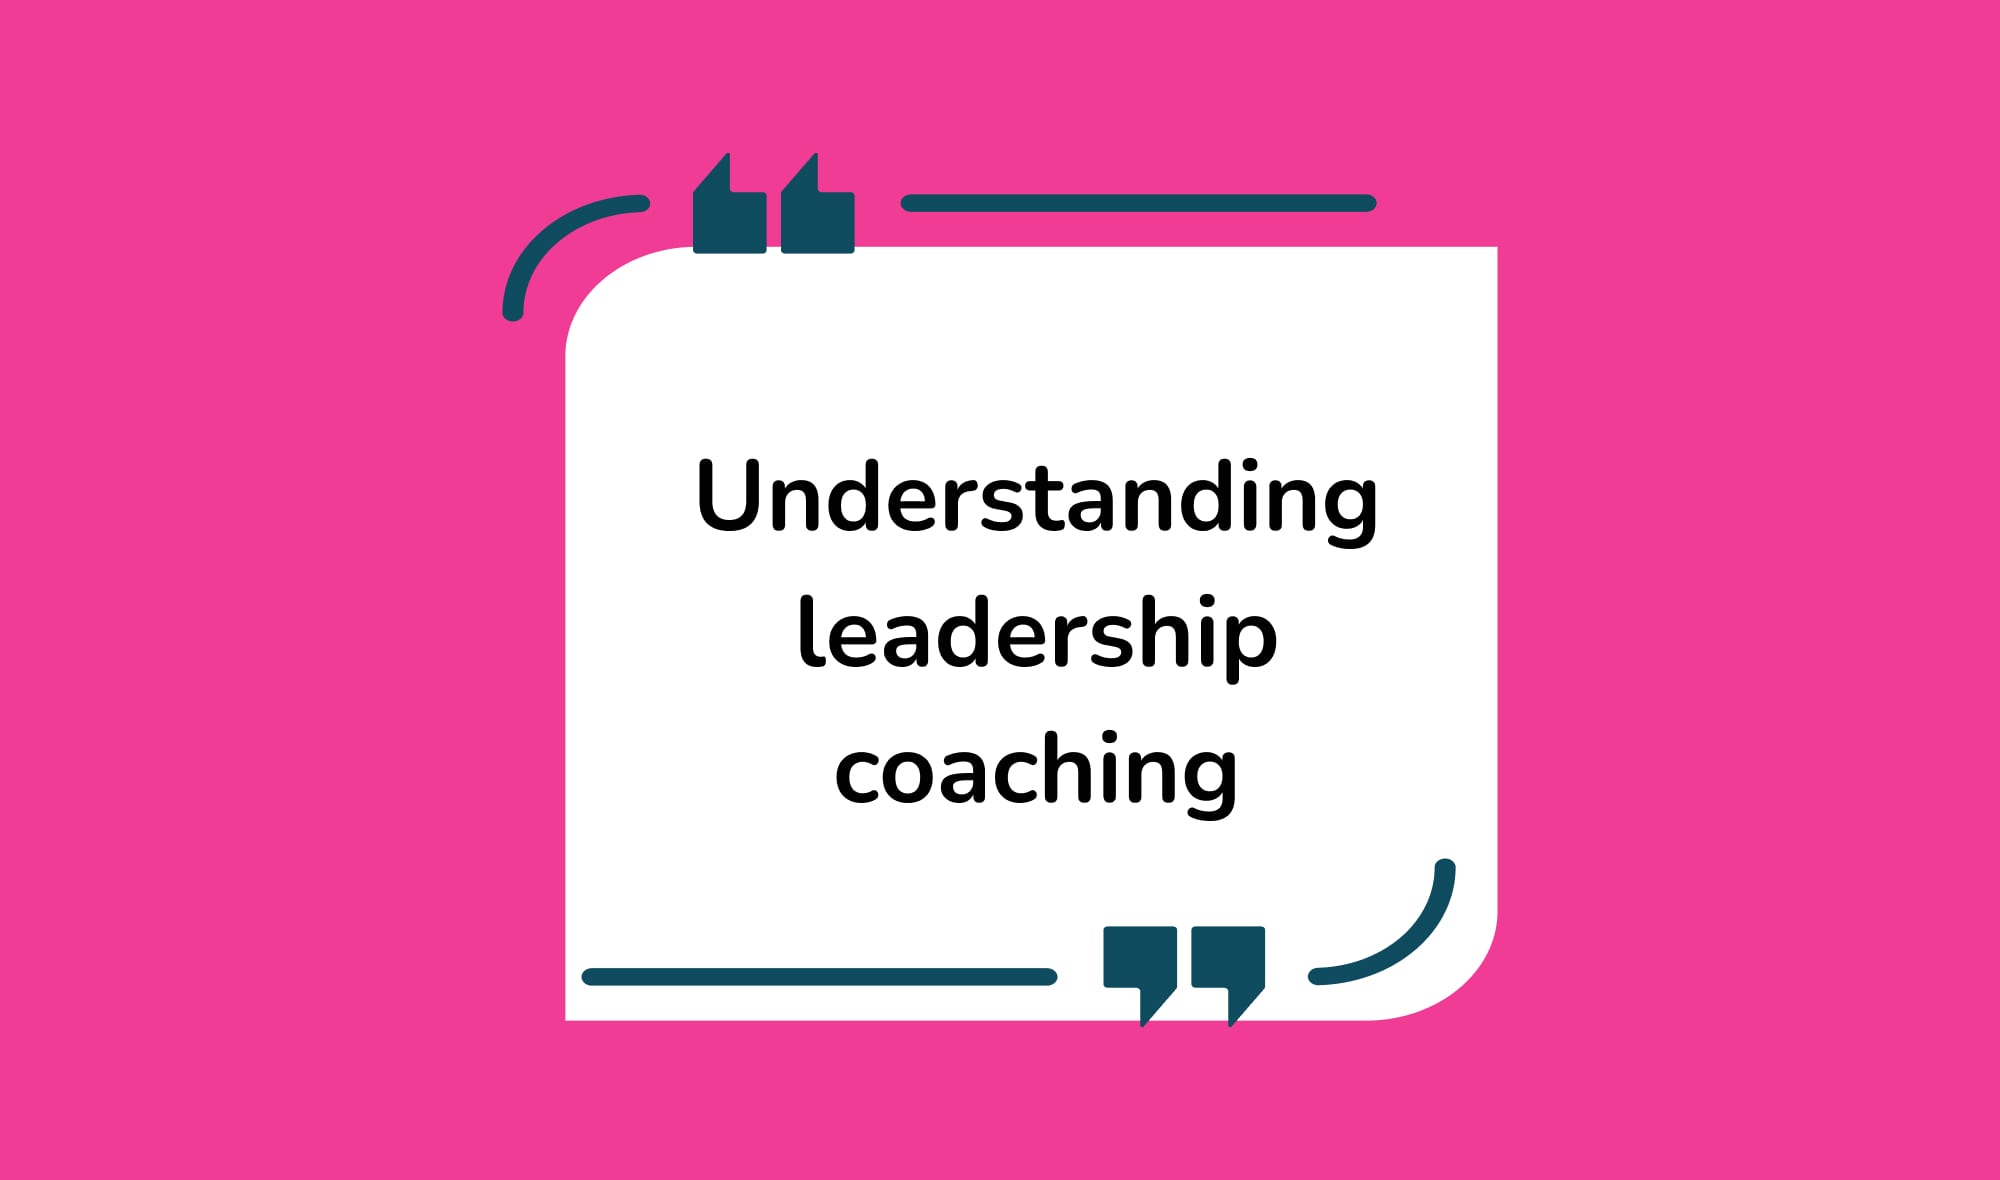 Understanding leadership coaching